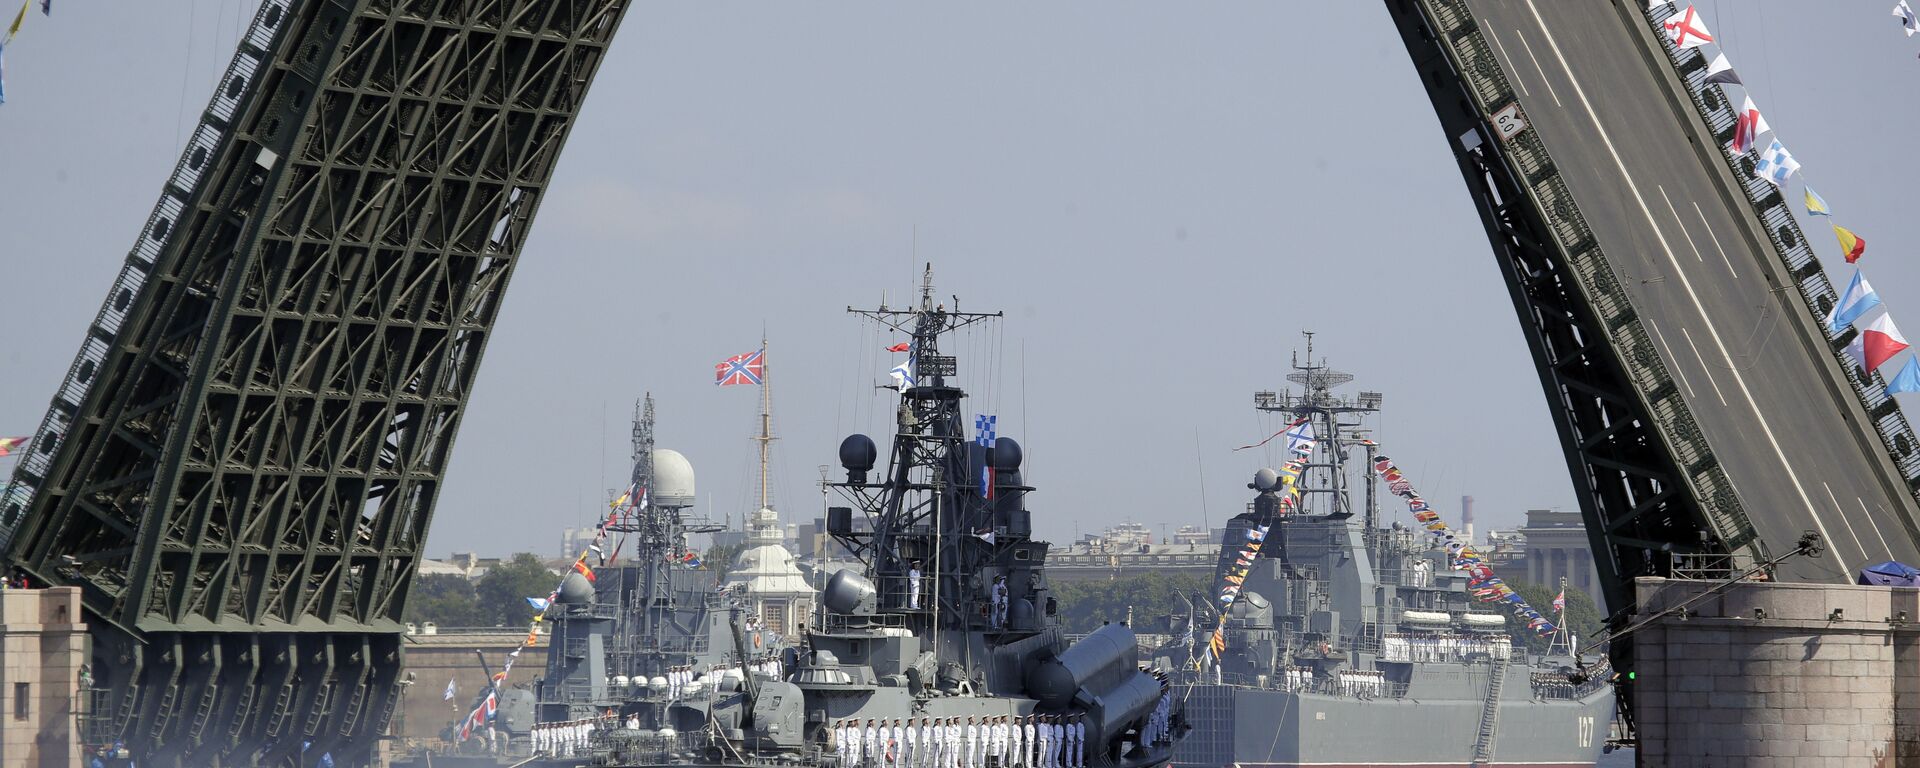 Ruski vojni brod plovi rekom Nevom tokom parade za Dan ratne mornarice Rusije u Sankt Peterburgu - Sputnik Srbija, 1920, 29.07.2022